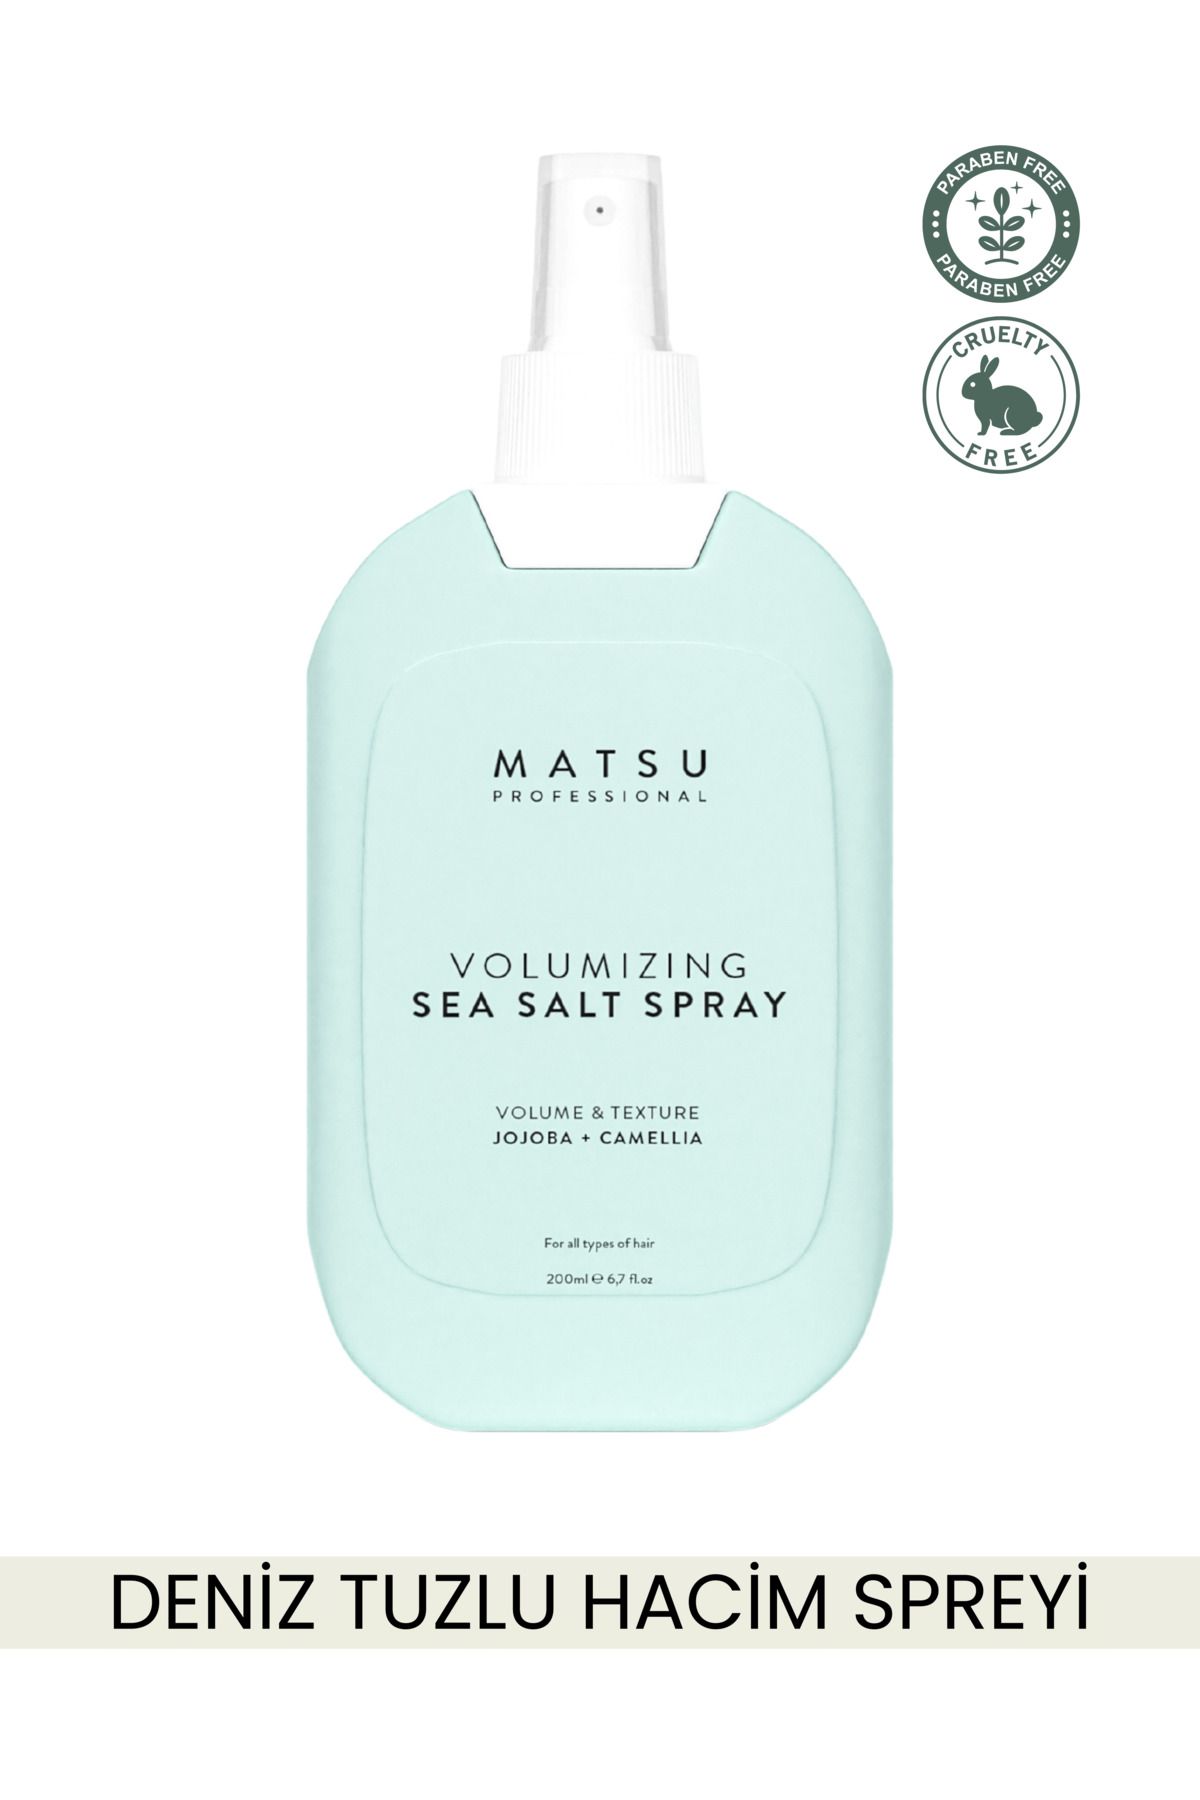 MATSU Volumizing Sea Salt Deniz Tuzu Etkili Hacim Spreyi 200ml